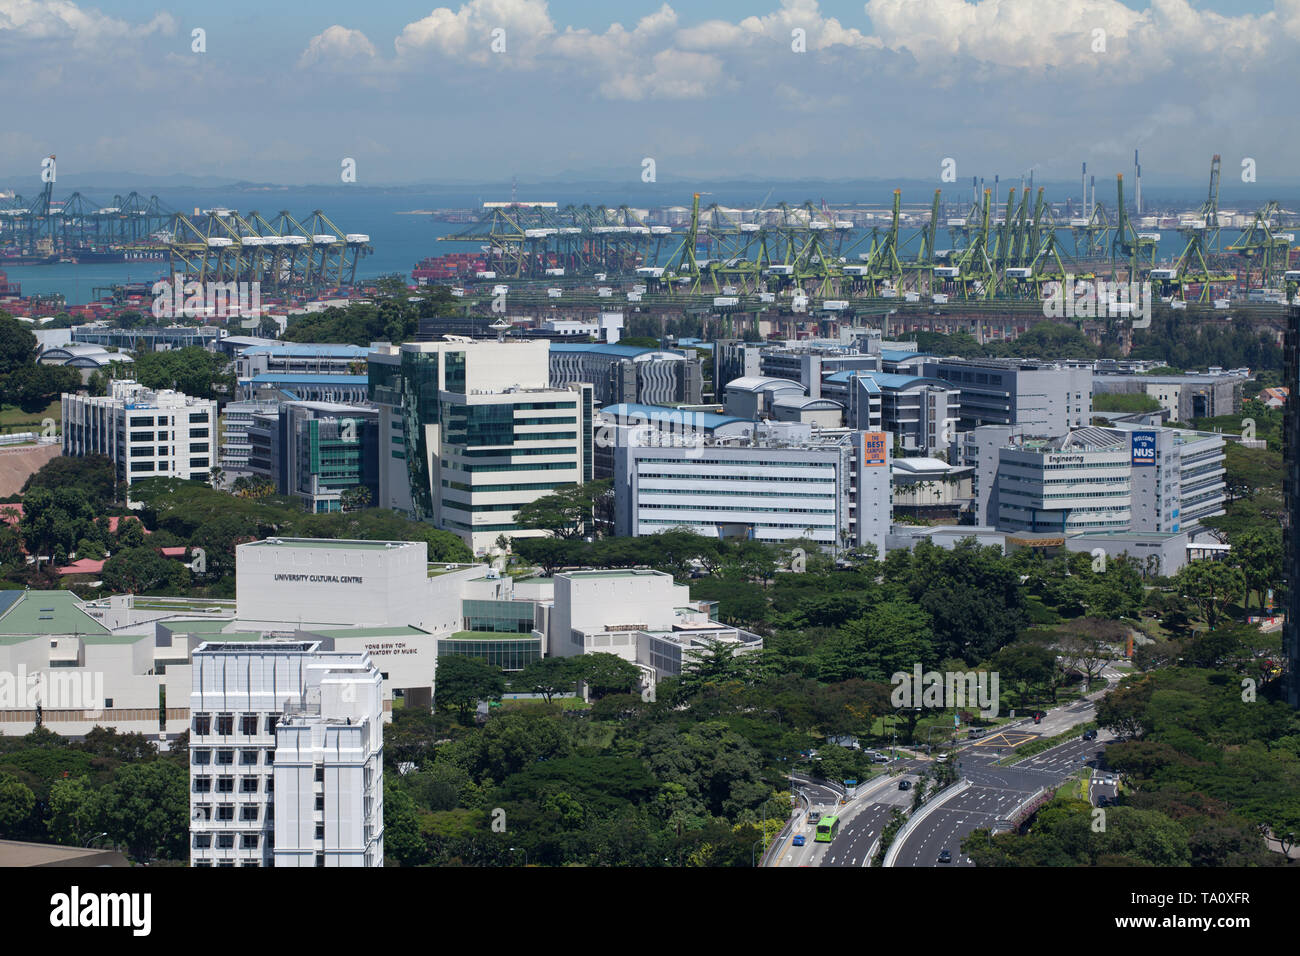 Campus de la Universidad Nacional de Singapur o conocido como NUS y Pasir Panjang terminal portuaria en el fondo. Singapur Foto de stock